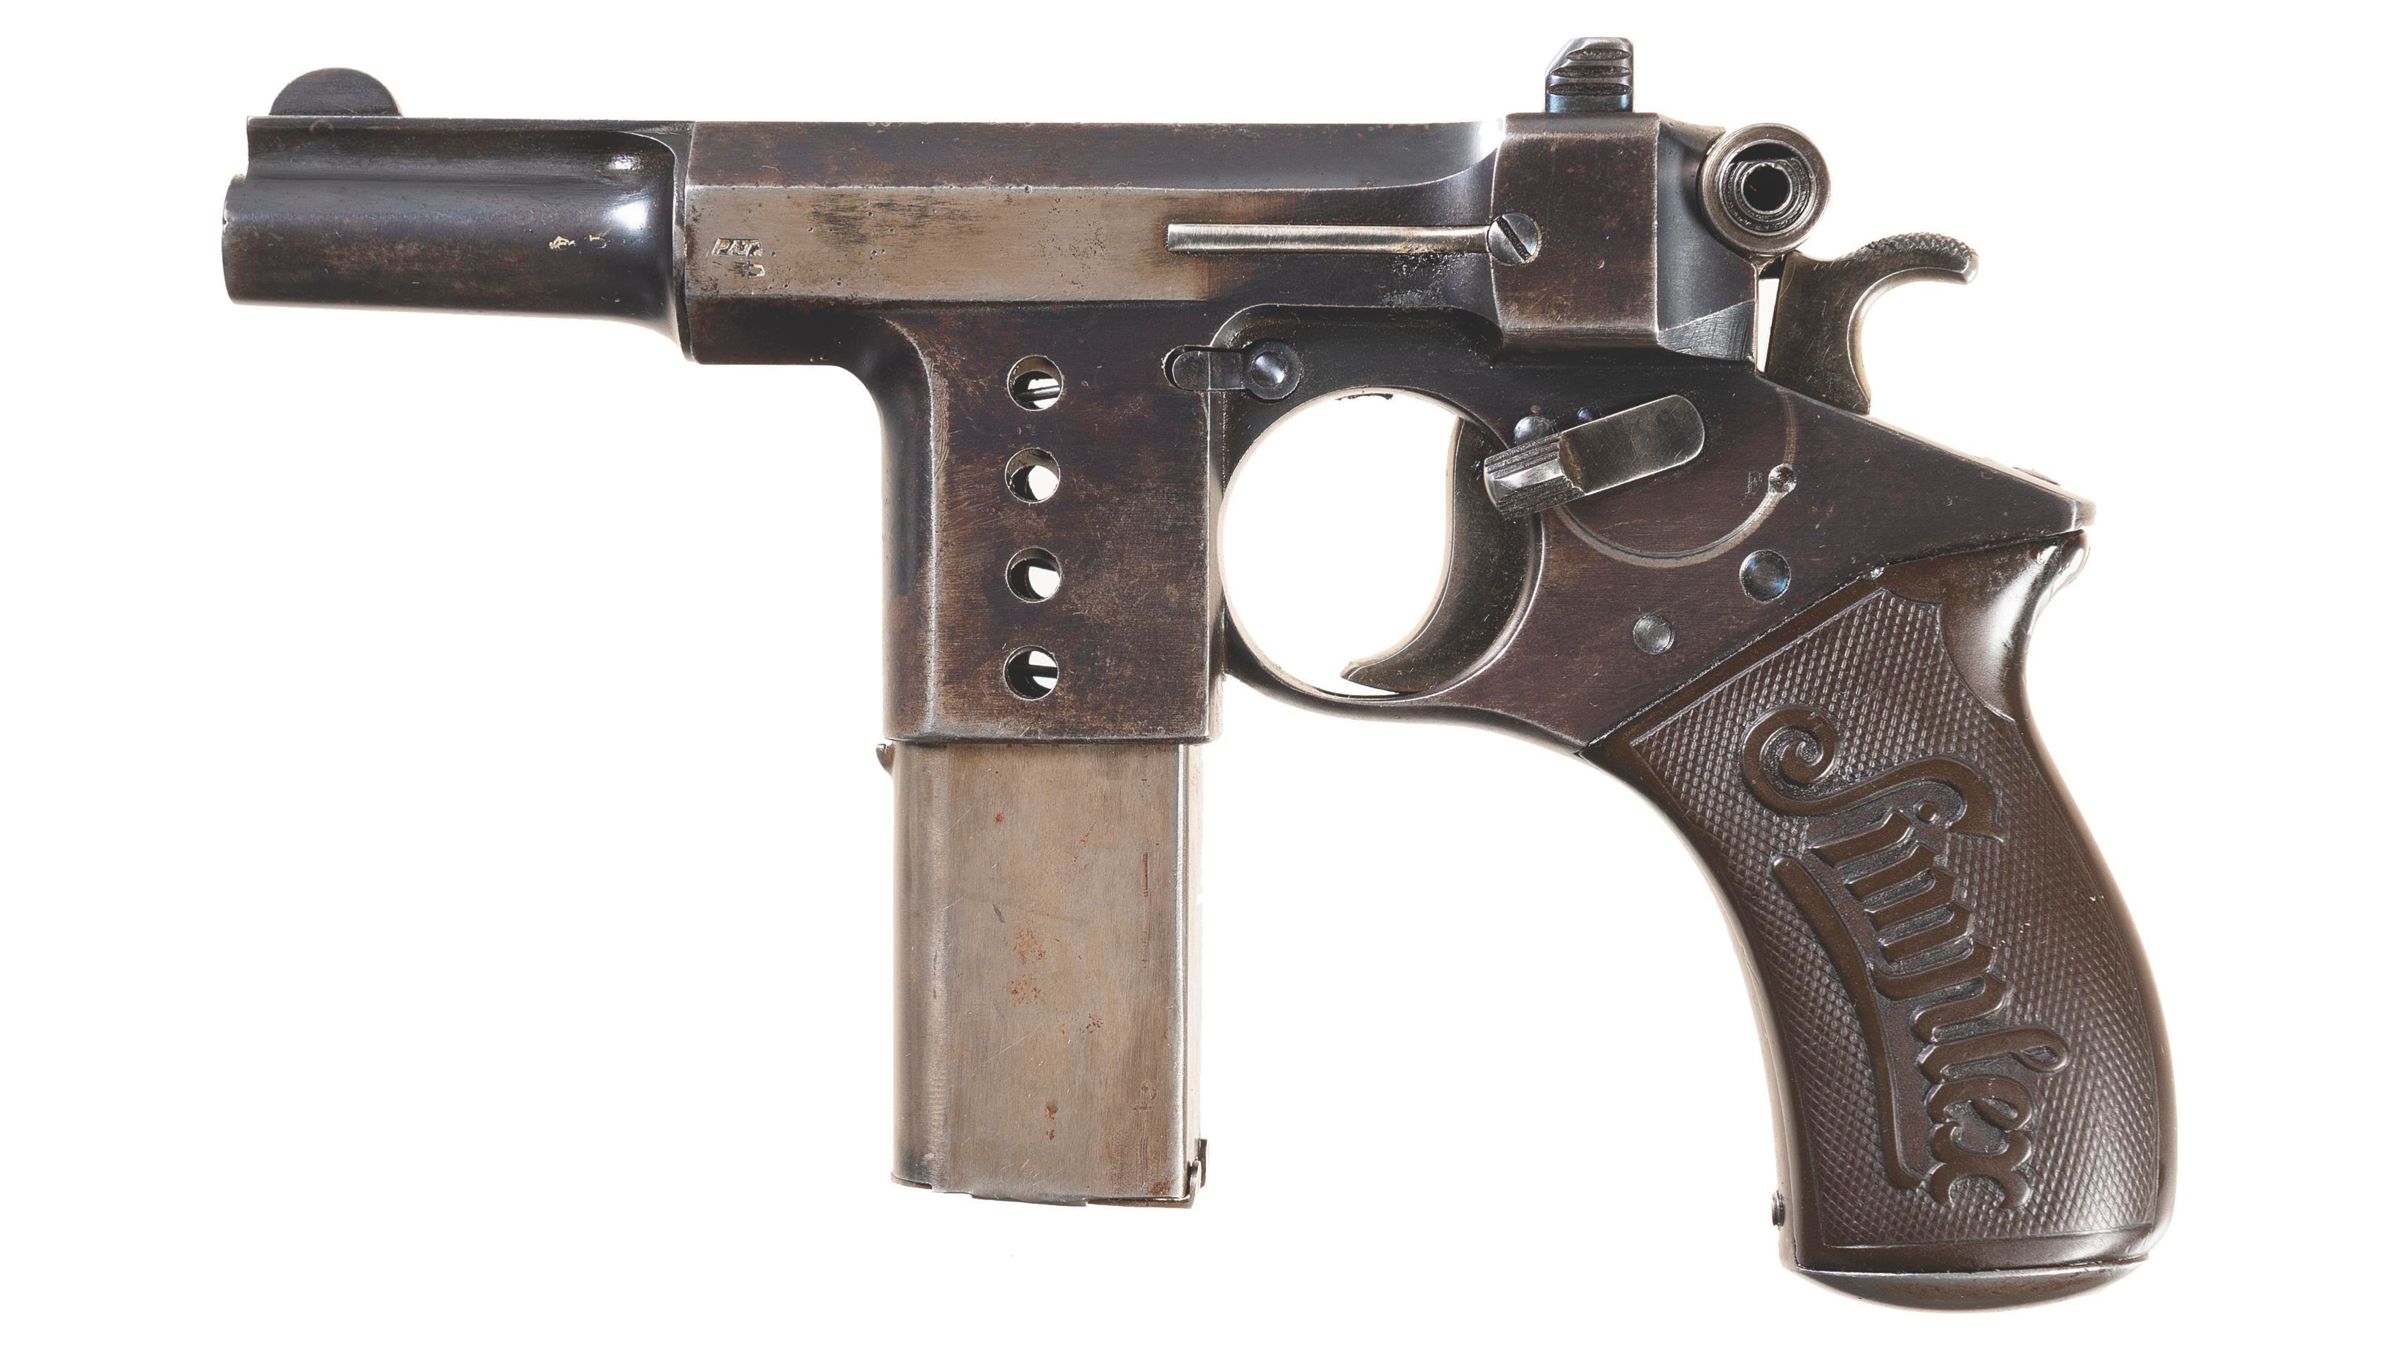 Scarce Bergmann Simplex Semi-Automatic Pistol